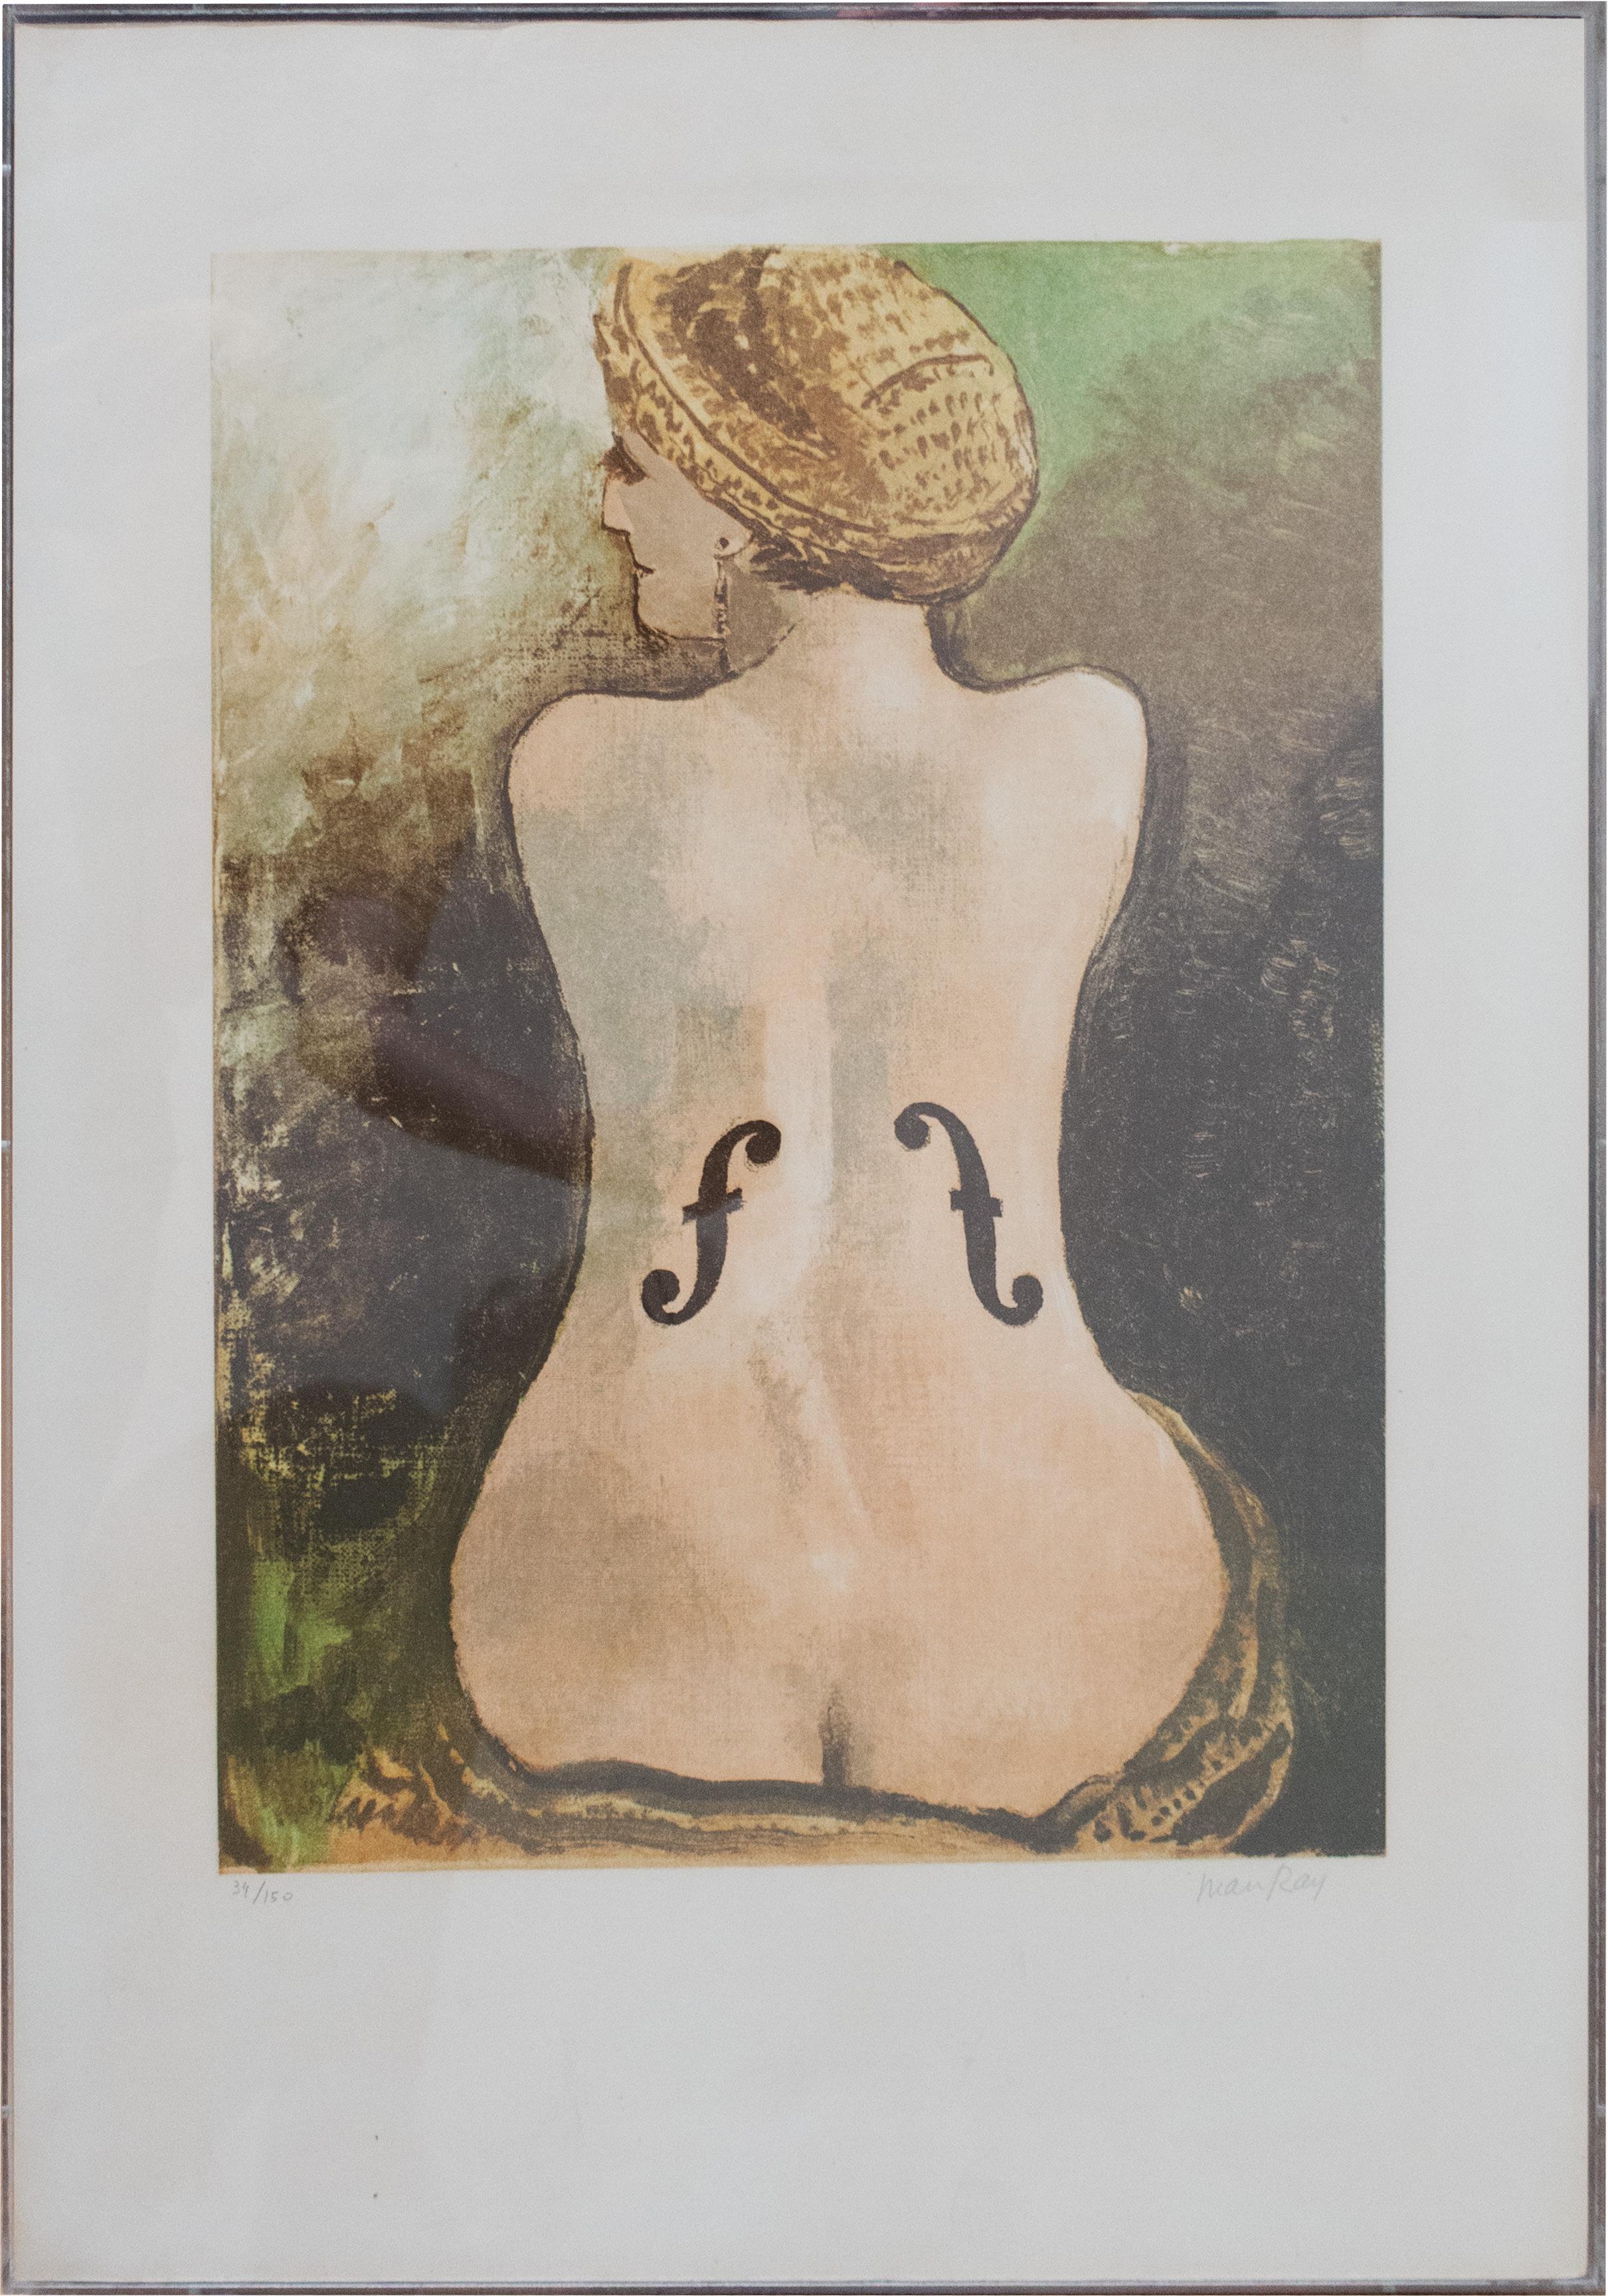 Le Violon d'Ingres, 1969, Litografia, Dada, Classic, Nudo – Print von Man Ray